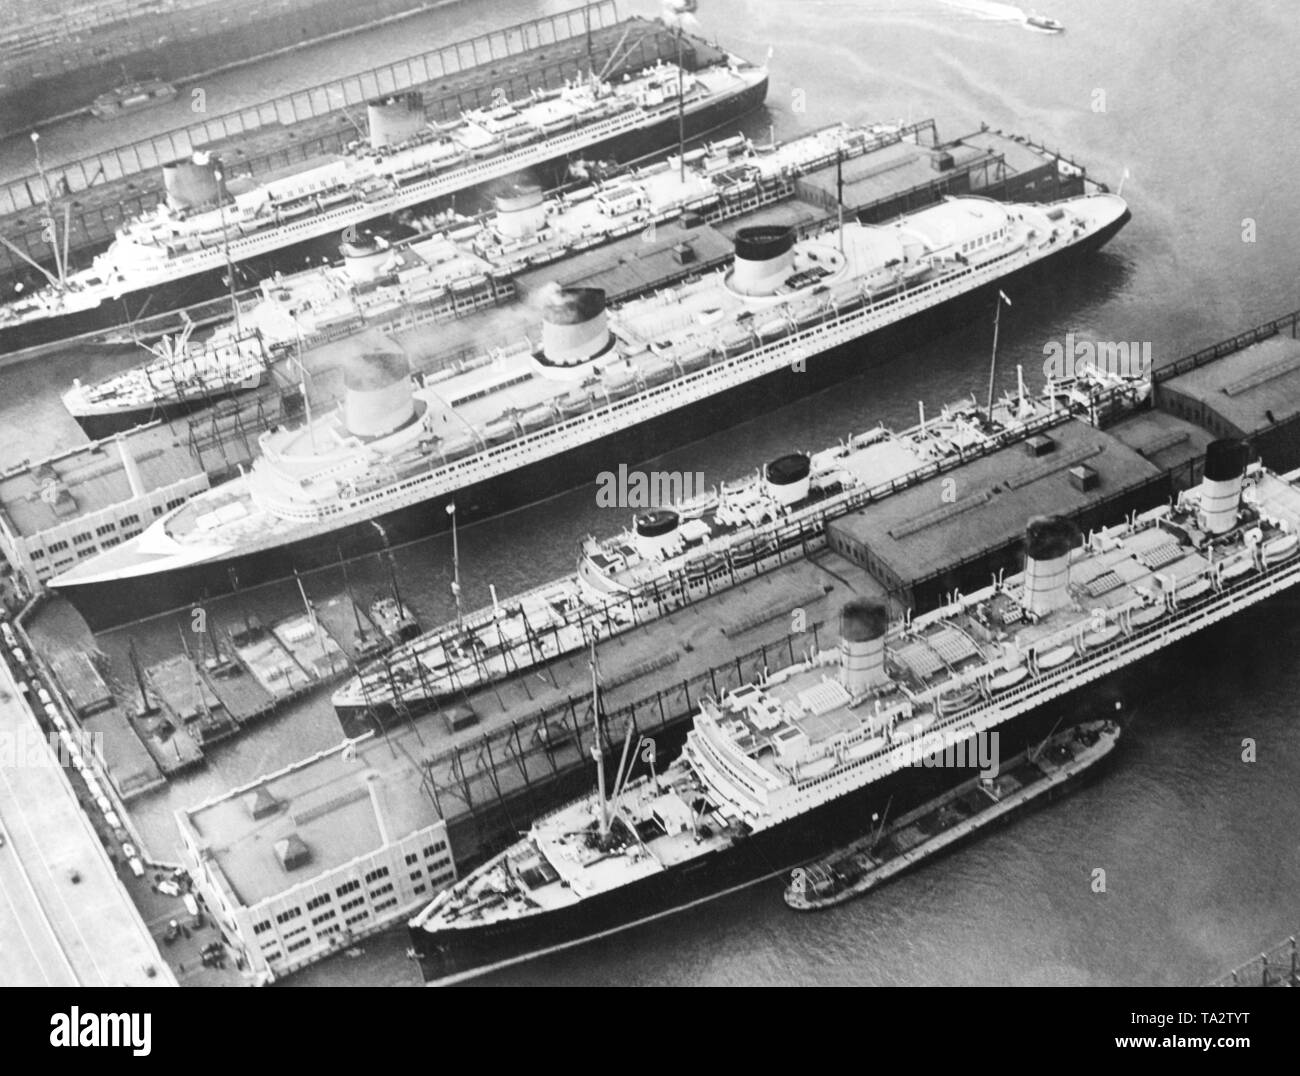 Die ozeanriesen 'Europa', 'Rex', 'Normandie', 'Georgic' und 'Berengaria' (von oben nach unten) sind in den Hafen von New York vor Anker. Stockfoto